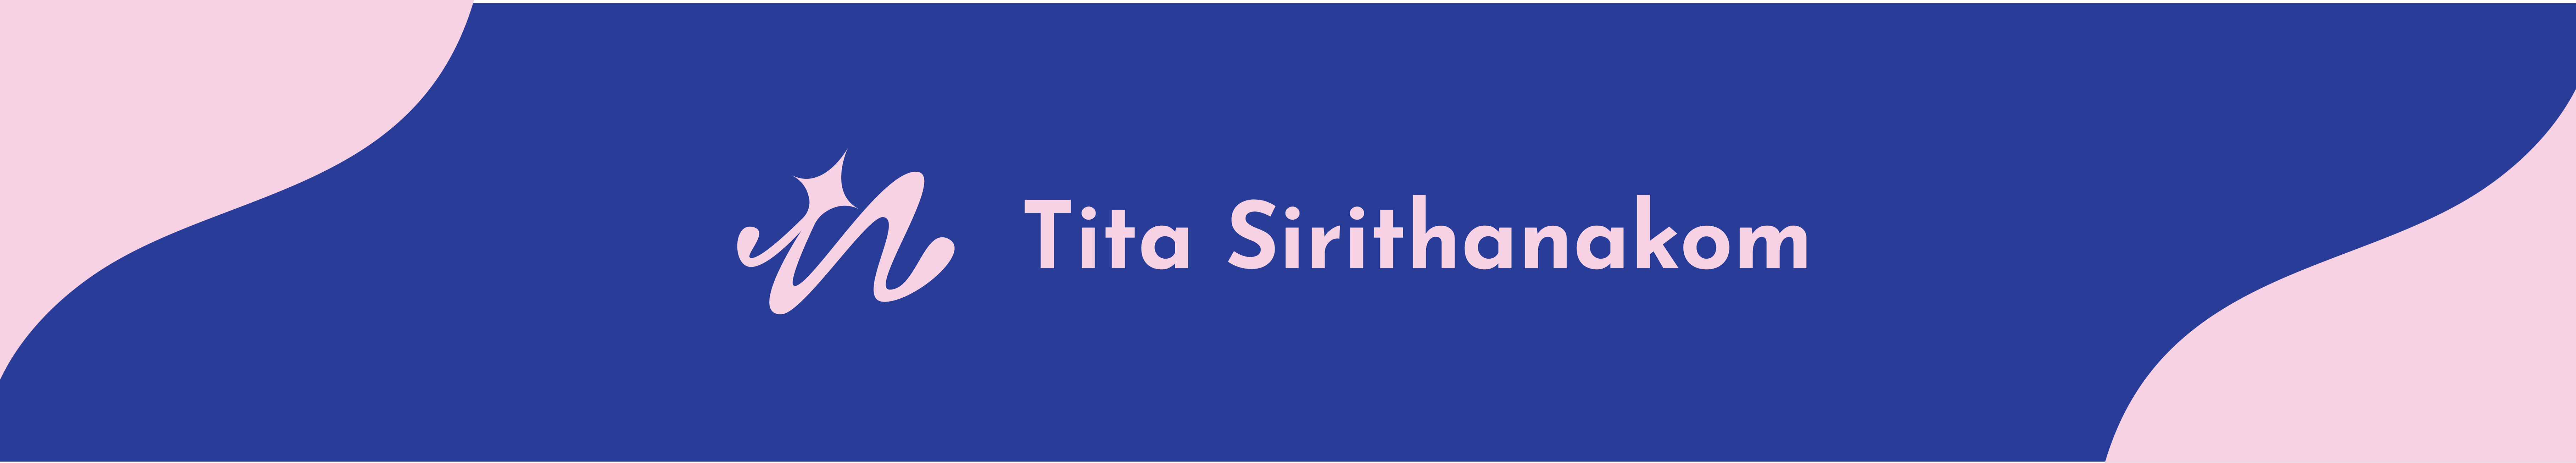 Profielbanner van Tita Sirithankom